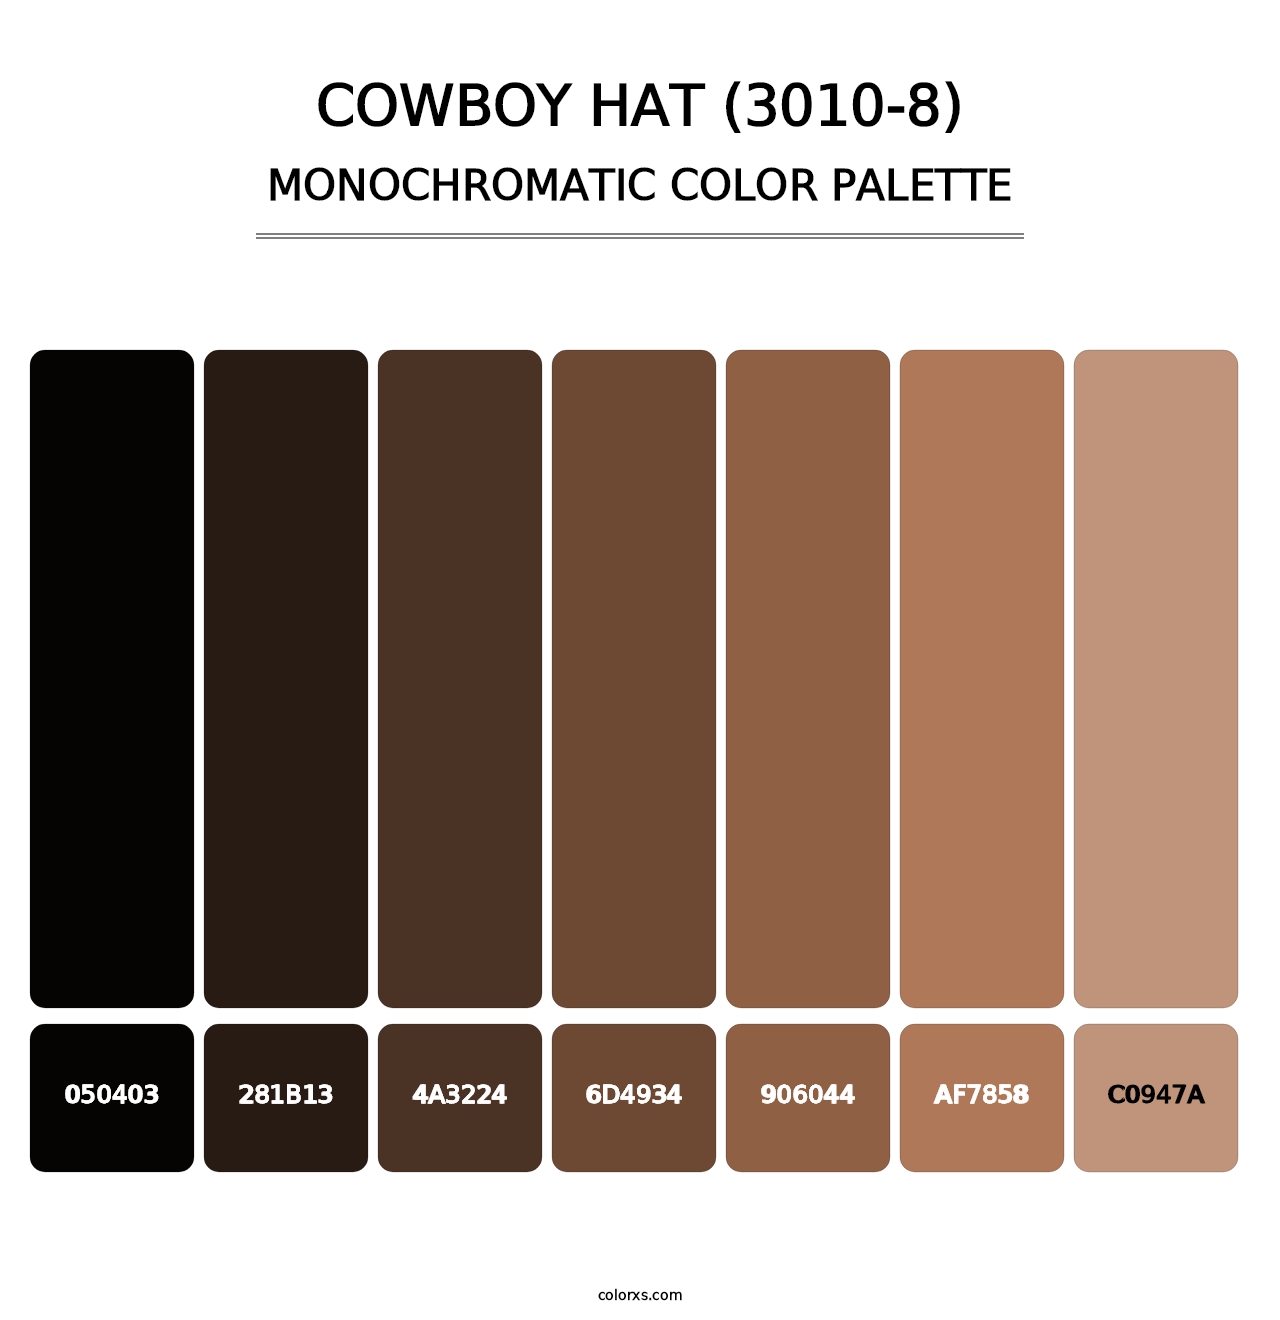 Cowboy Hat (3010-8) - Monochromatic Color Palette